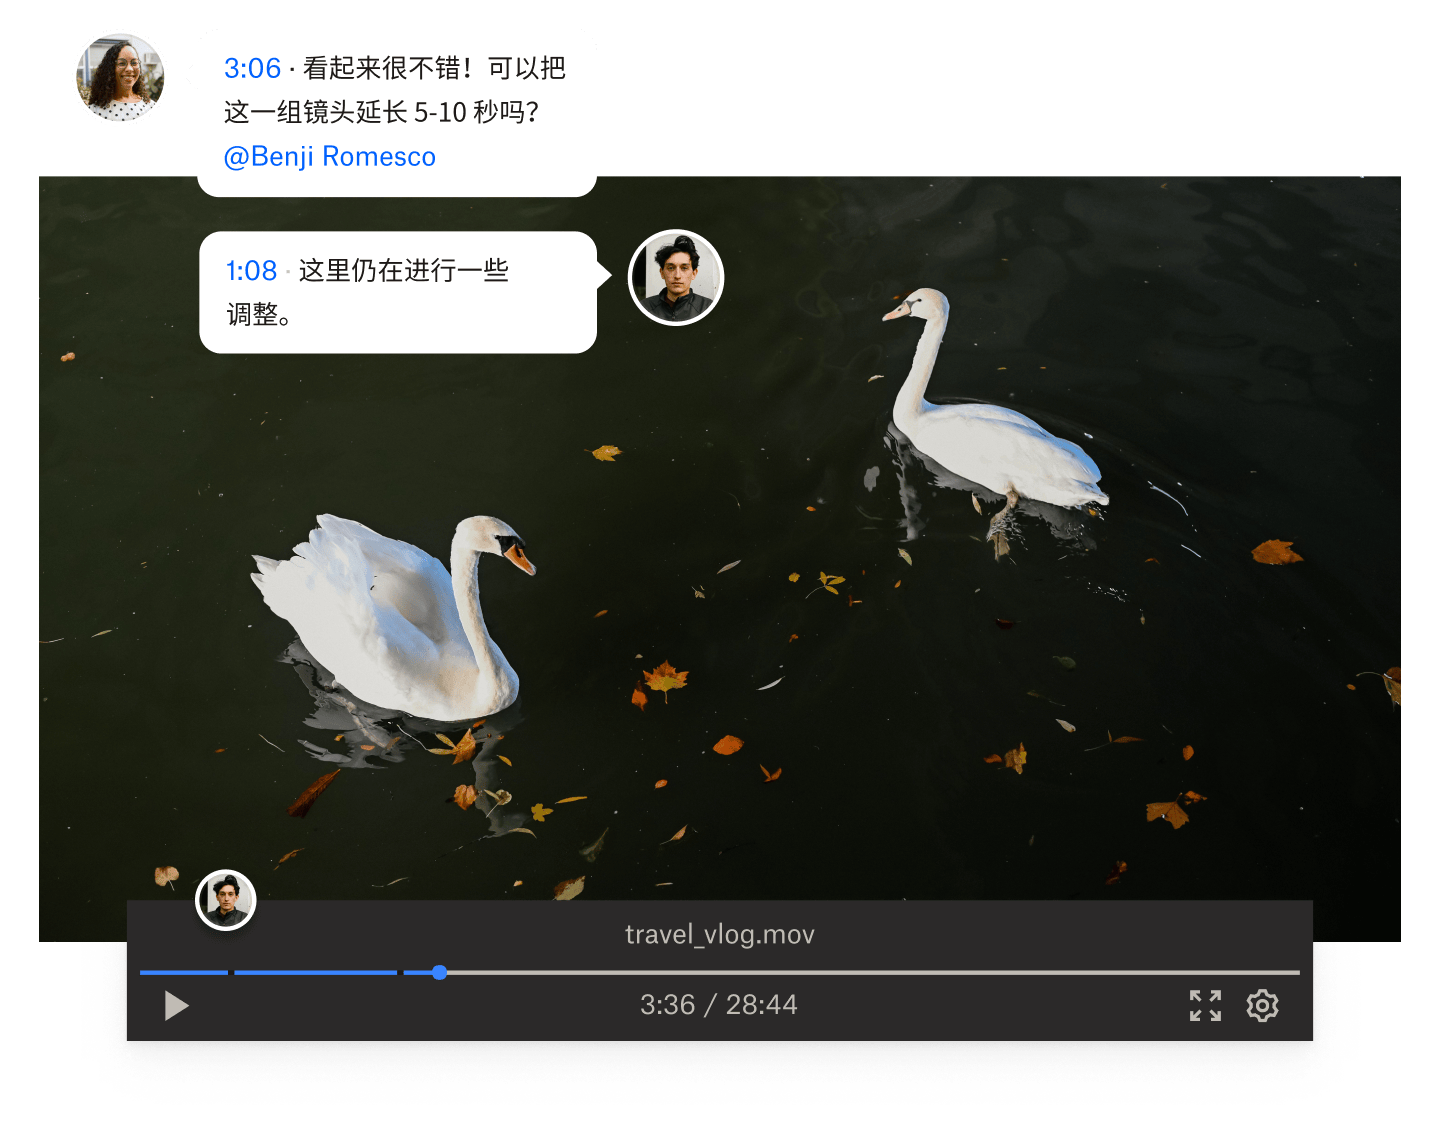 两个人对 Dropbox 上两只天鹅游泳的视频文件发表一条基于时间的评论。